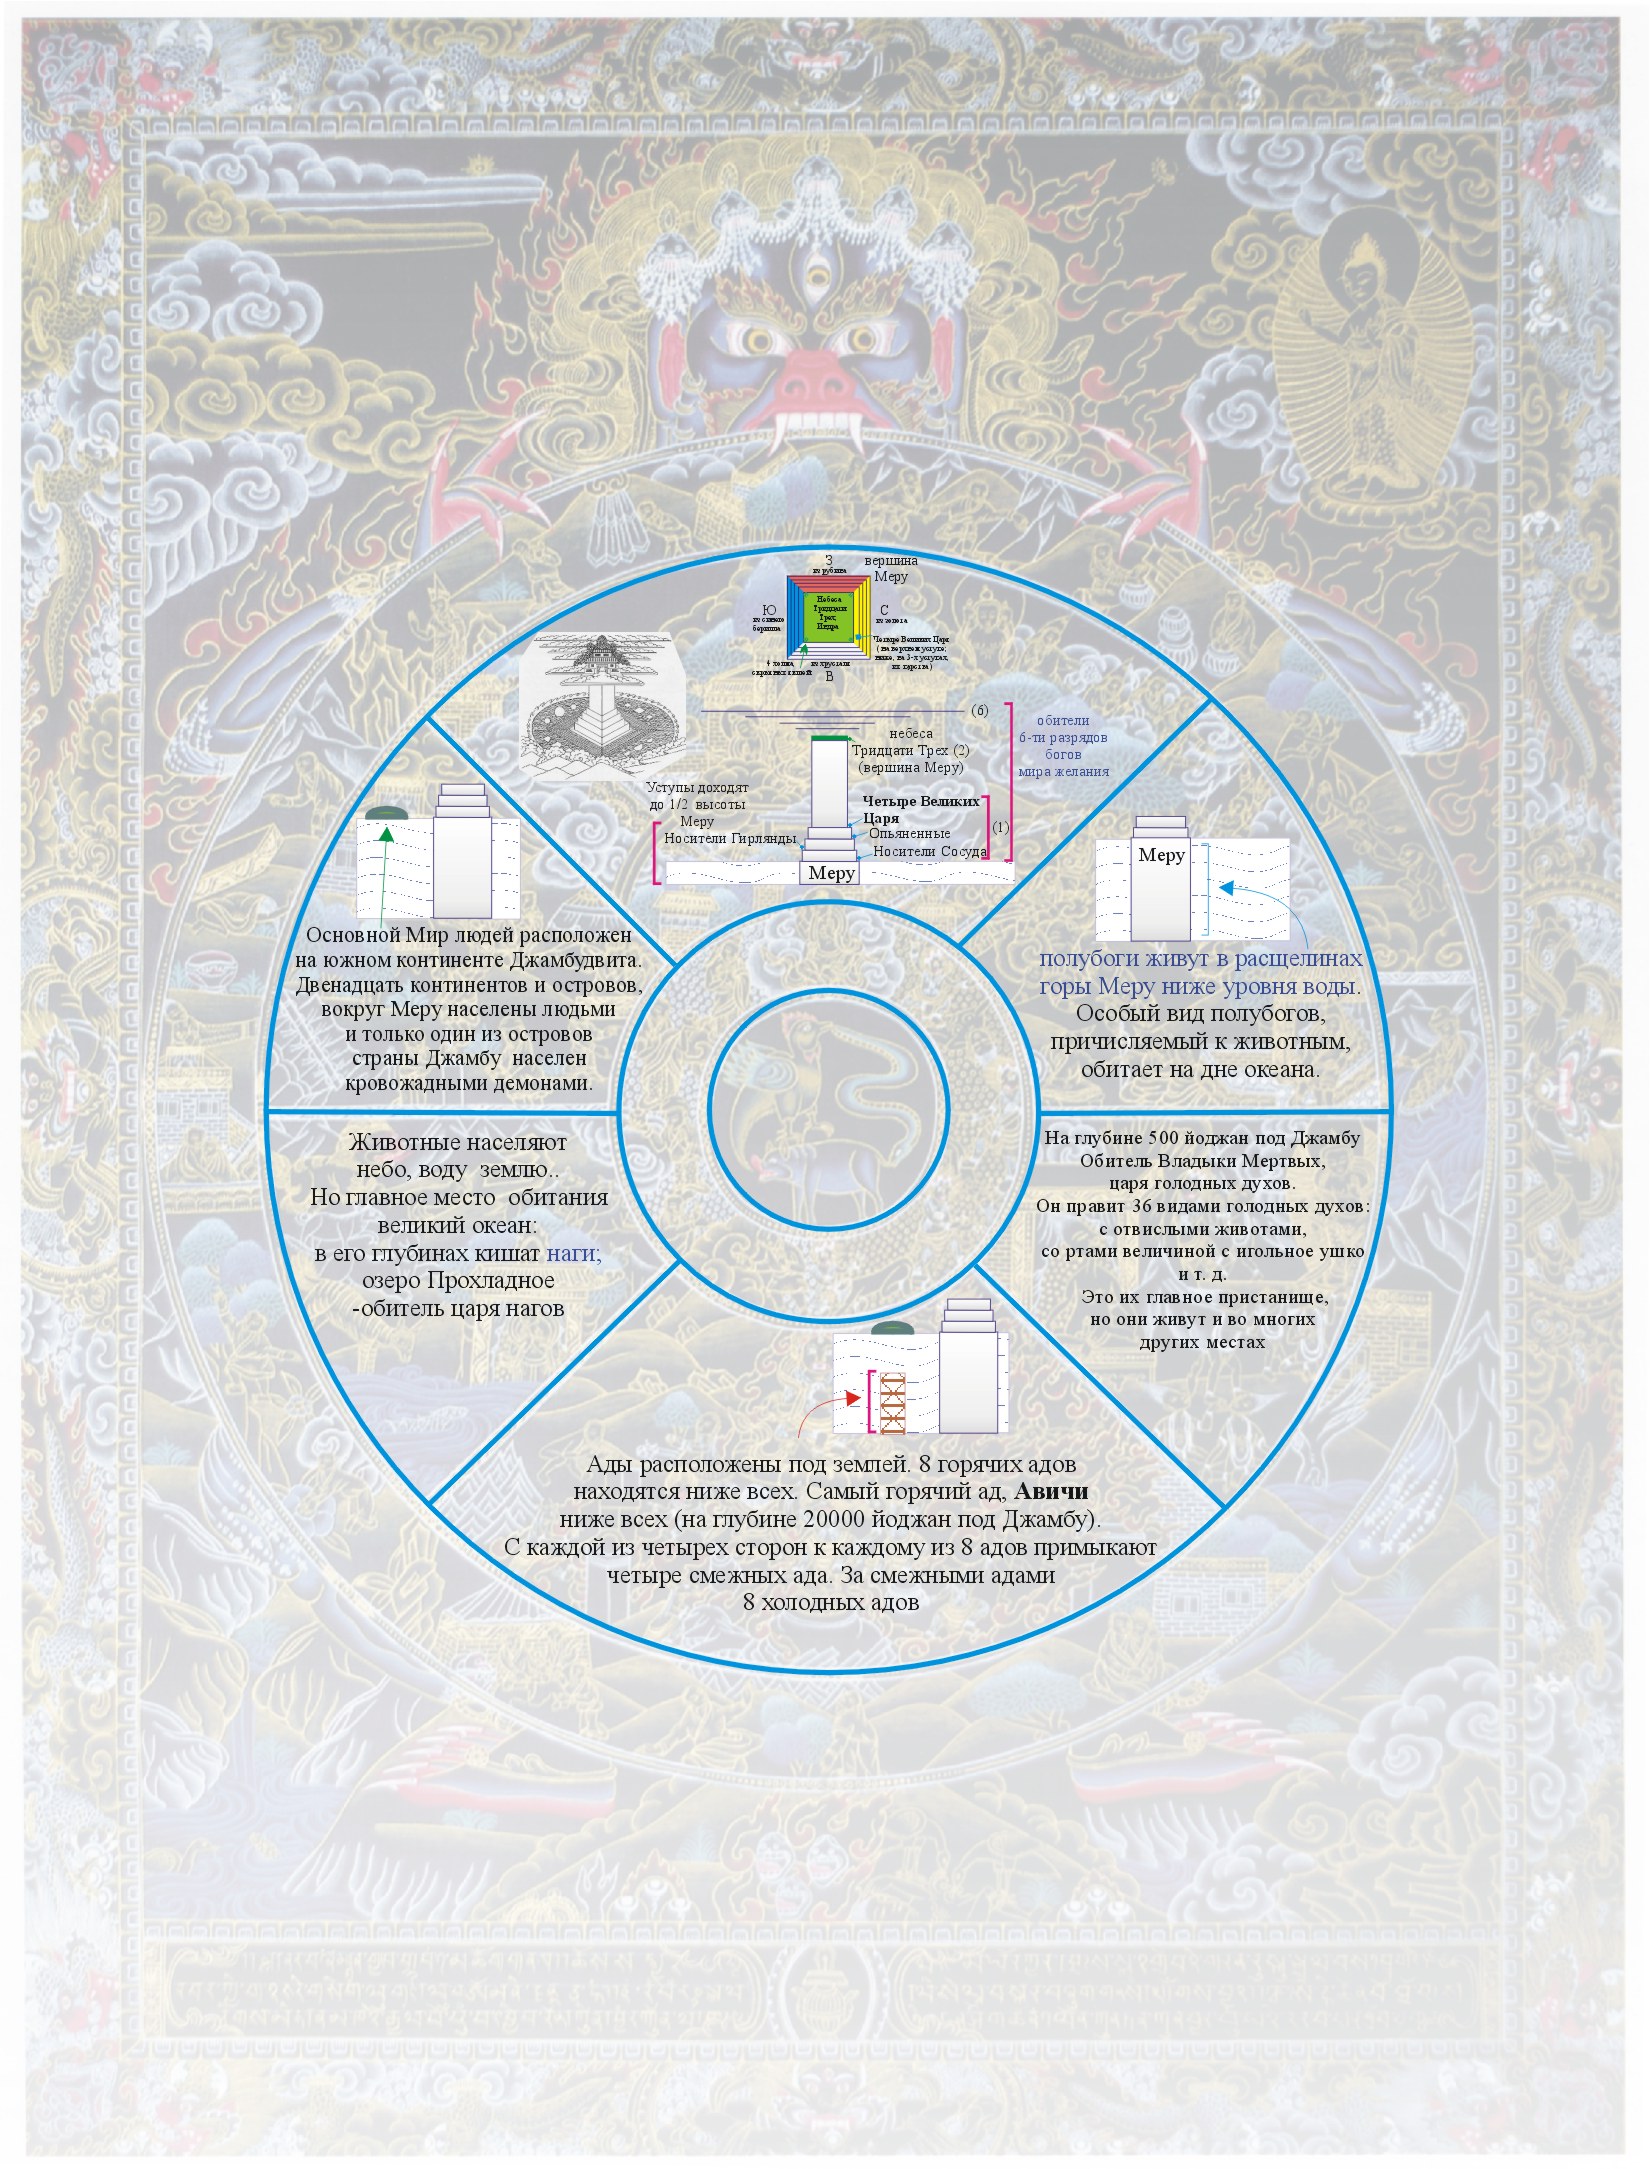 Рисунок 2. Расположение шести сансарических миров в картографии четырехзвенной систсемы на традиционном буддийском изображении Колеса Сансары